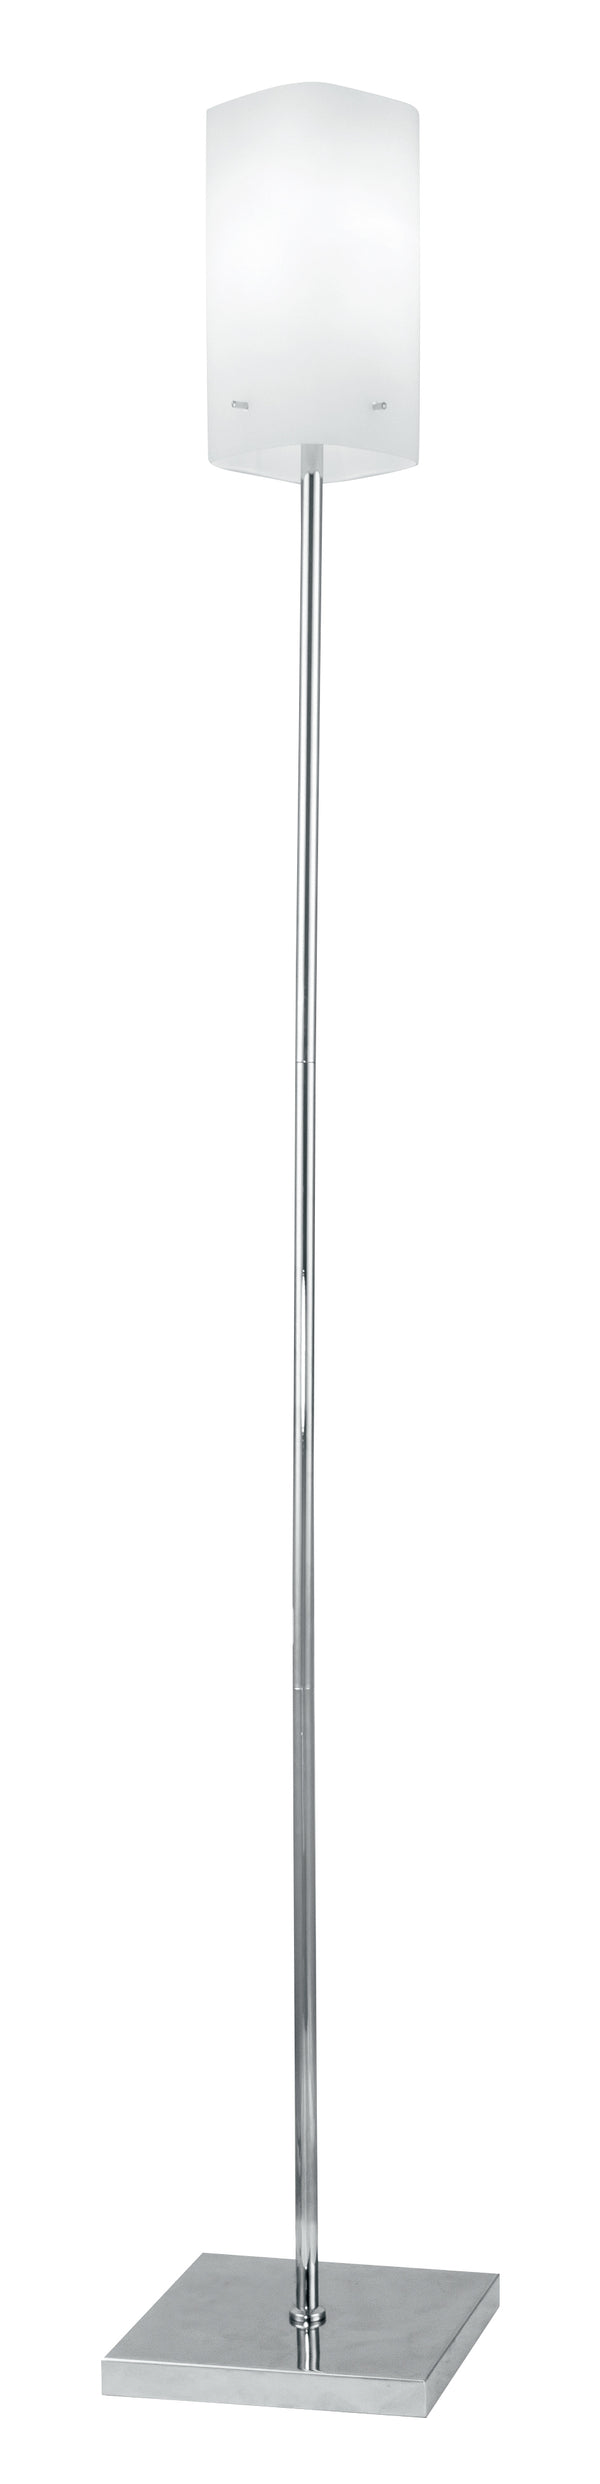 Lampadaire en métal, abat-jour en verre blanc, lampadaire moderne E27 acquista